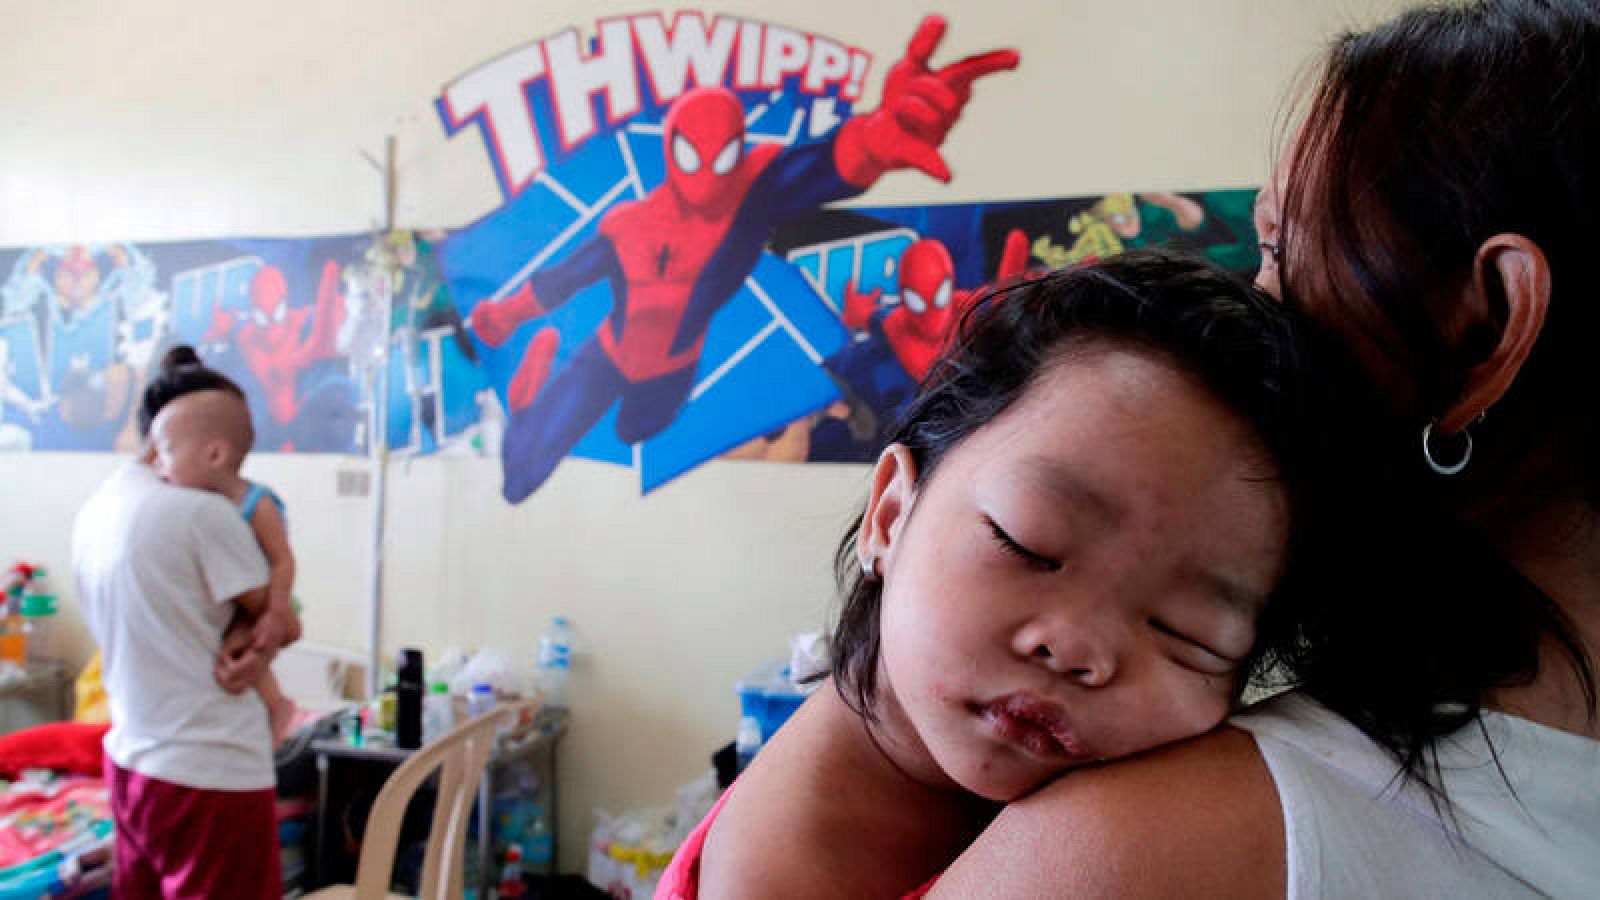 Los brotes de sarampión "continúan propagándose rápidamente" en todo el mundo